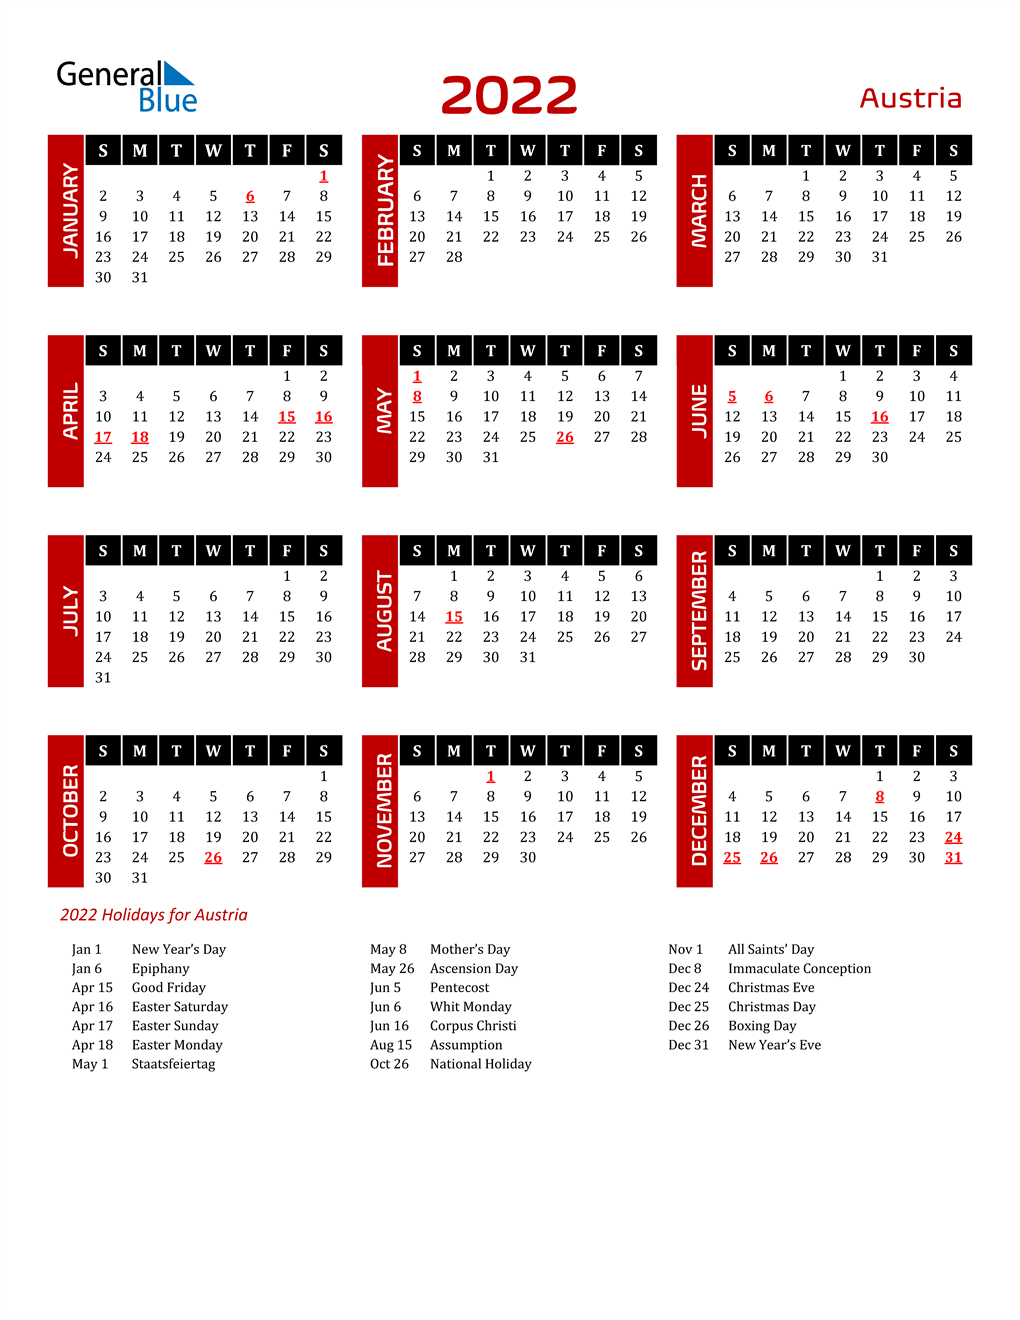 2022 Austria Calendar With Holidays